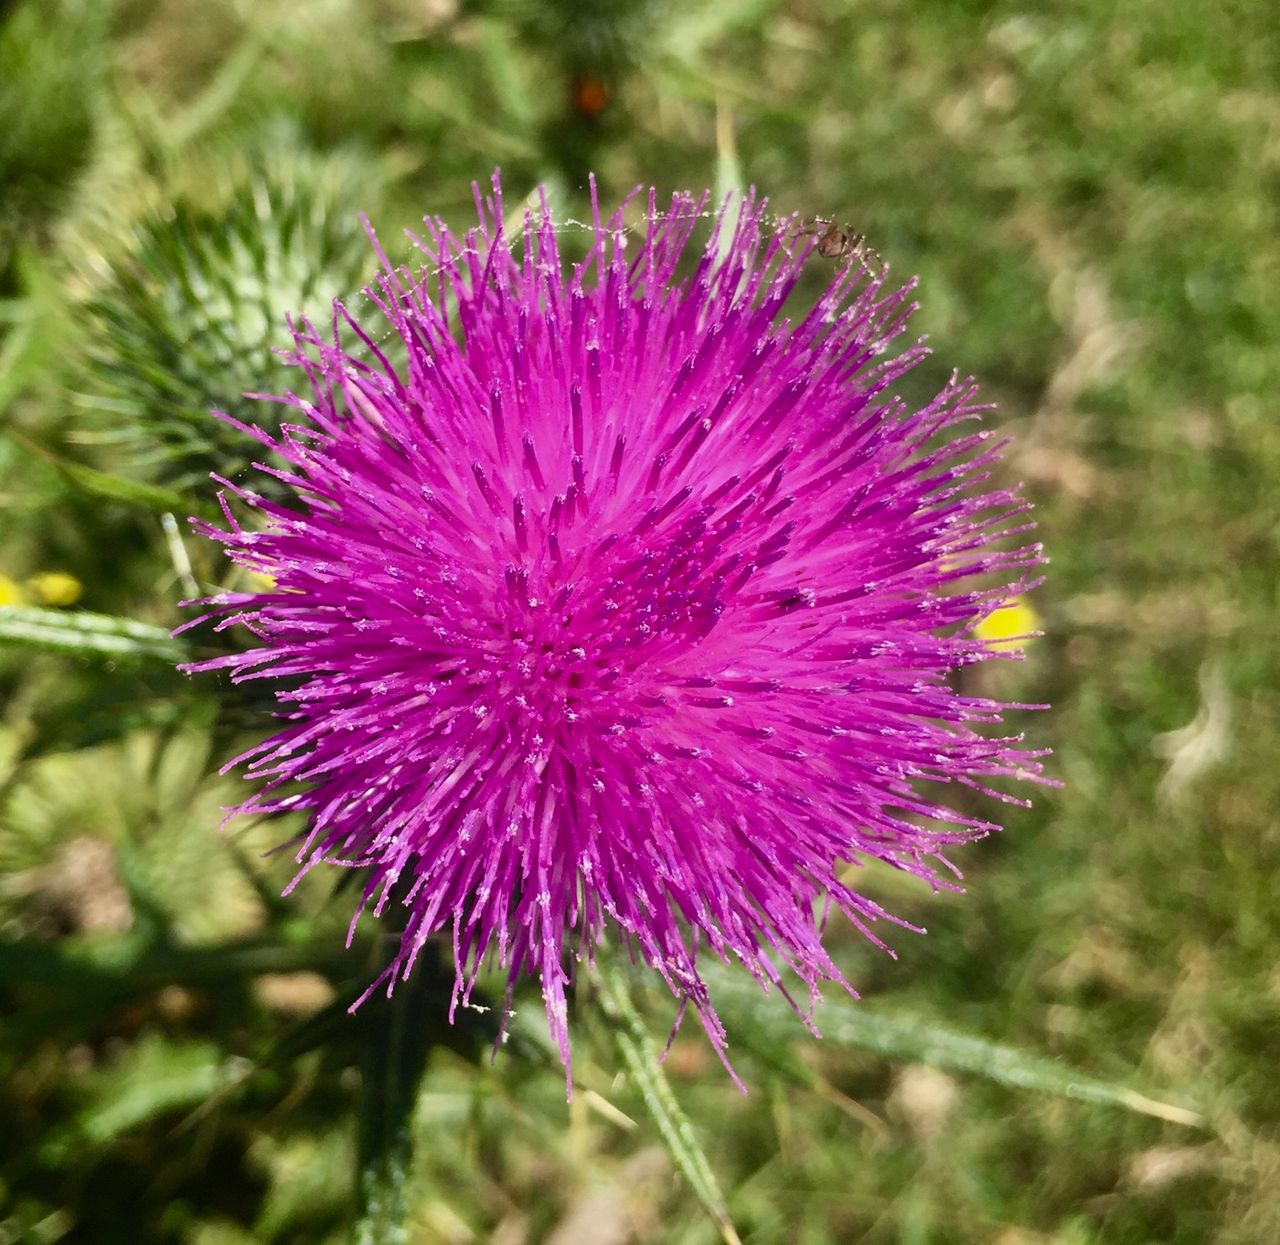 A bright pink, spikey ball of a flower.